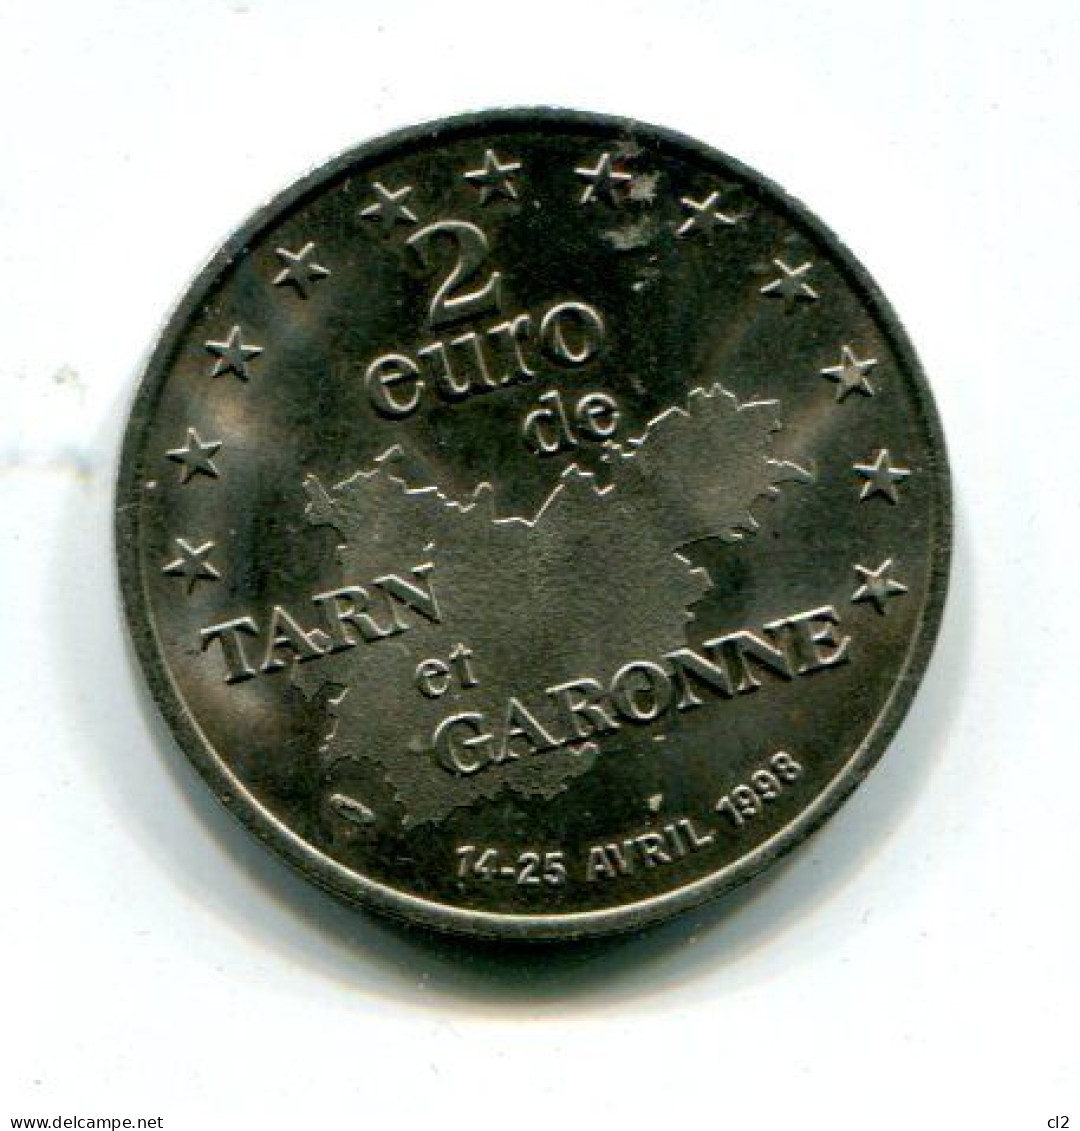 FRANCE - 2 Euros Du Tarn Et Garonne - 14-25 Avril 1998 - Euros Des Villes